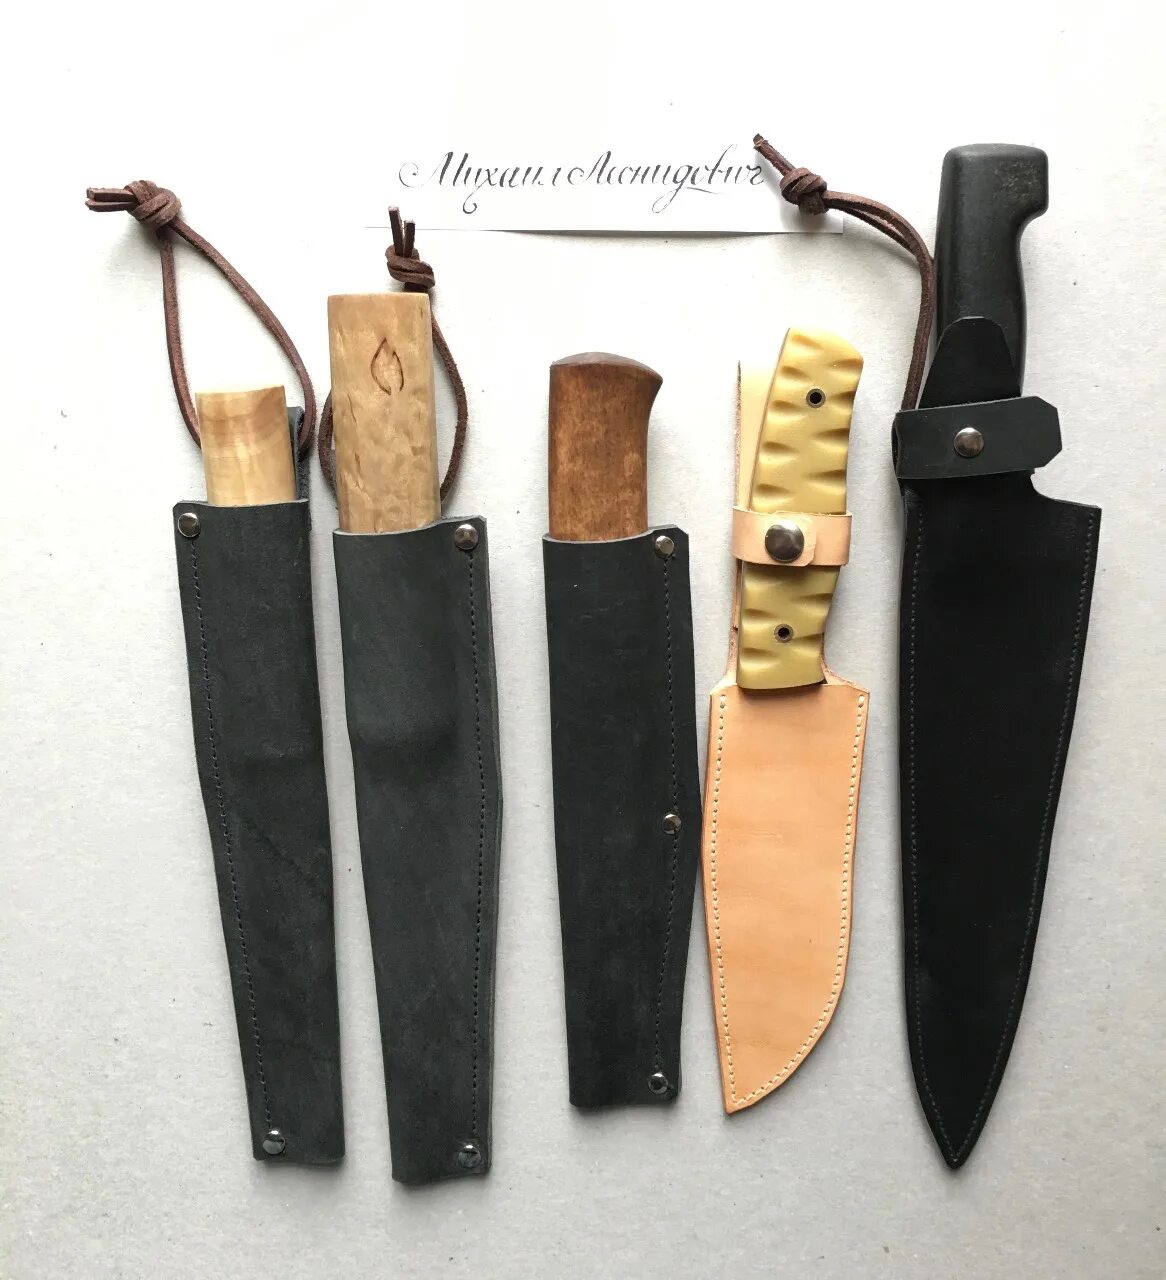 Без ножен. Кожаные ножны с жесткими вставками. Нужный нож. Деревянные ножны изготовление. Обкладка деревянных ножен.